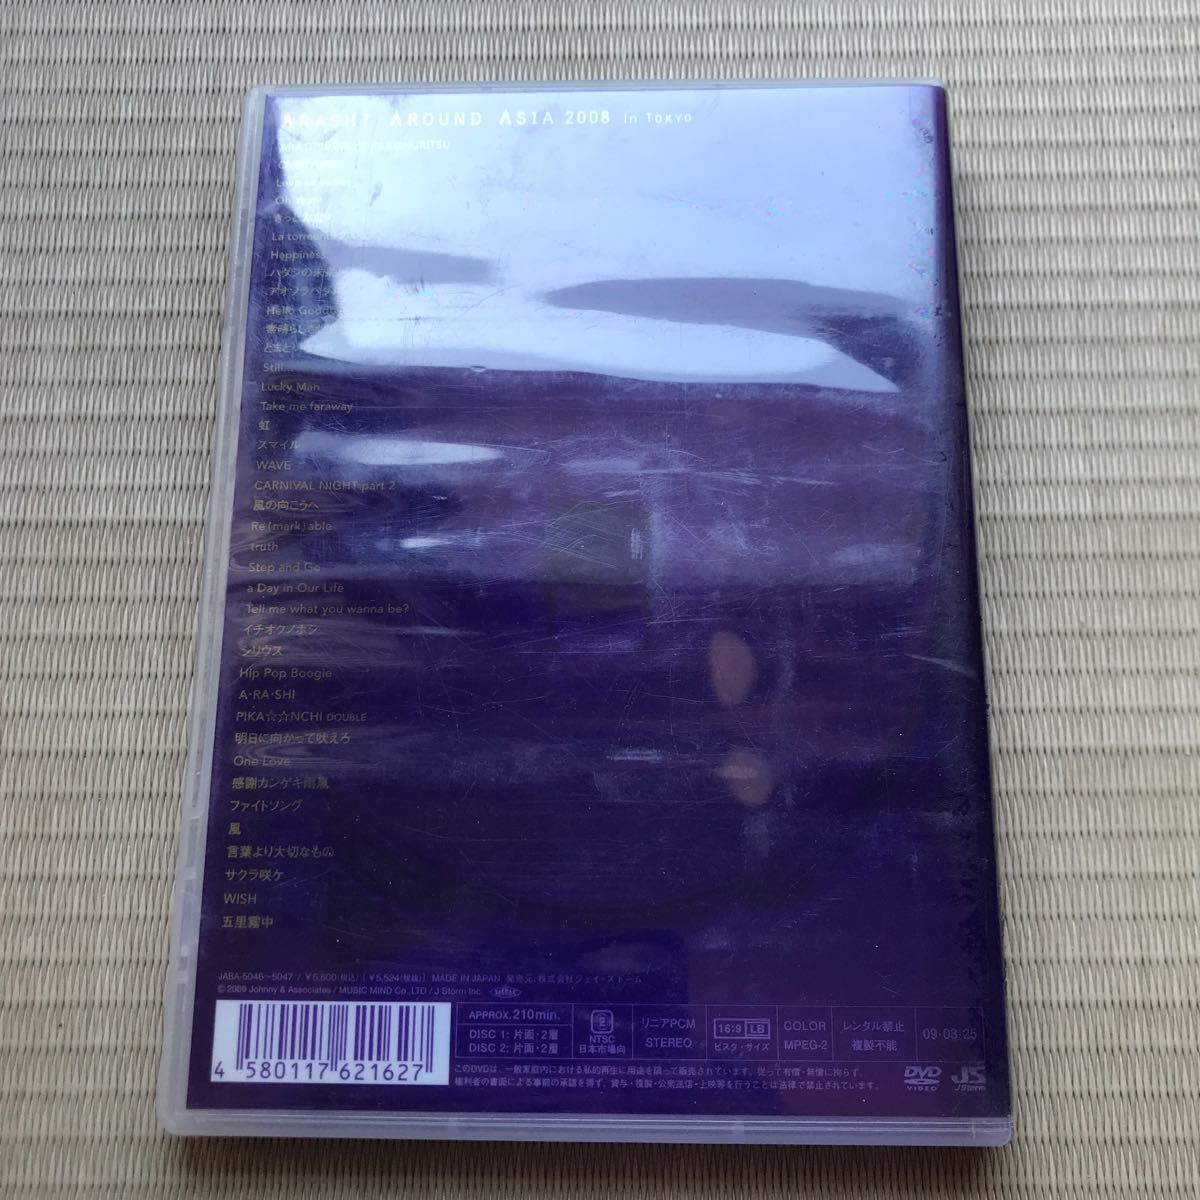 嵐 DVD 【ARASHI AROUND ASIA 2008 in TOKYO】 09/3/25発売 